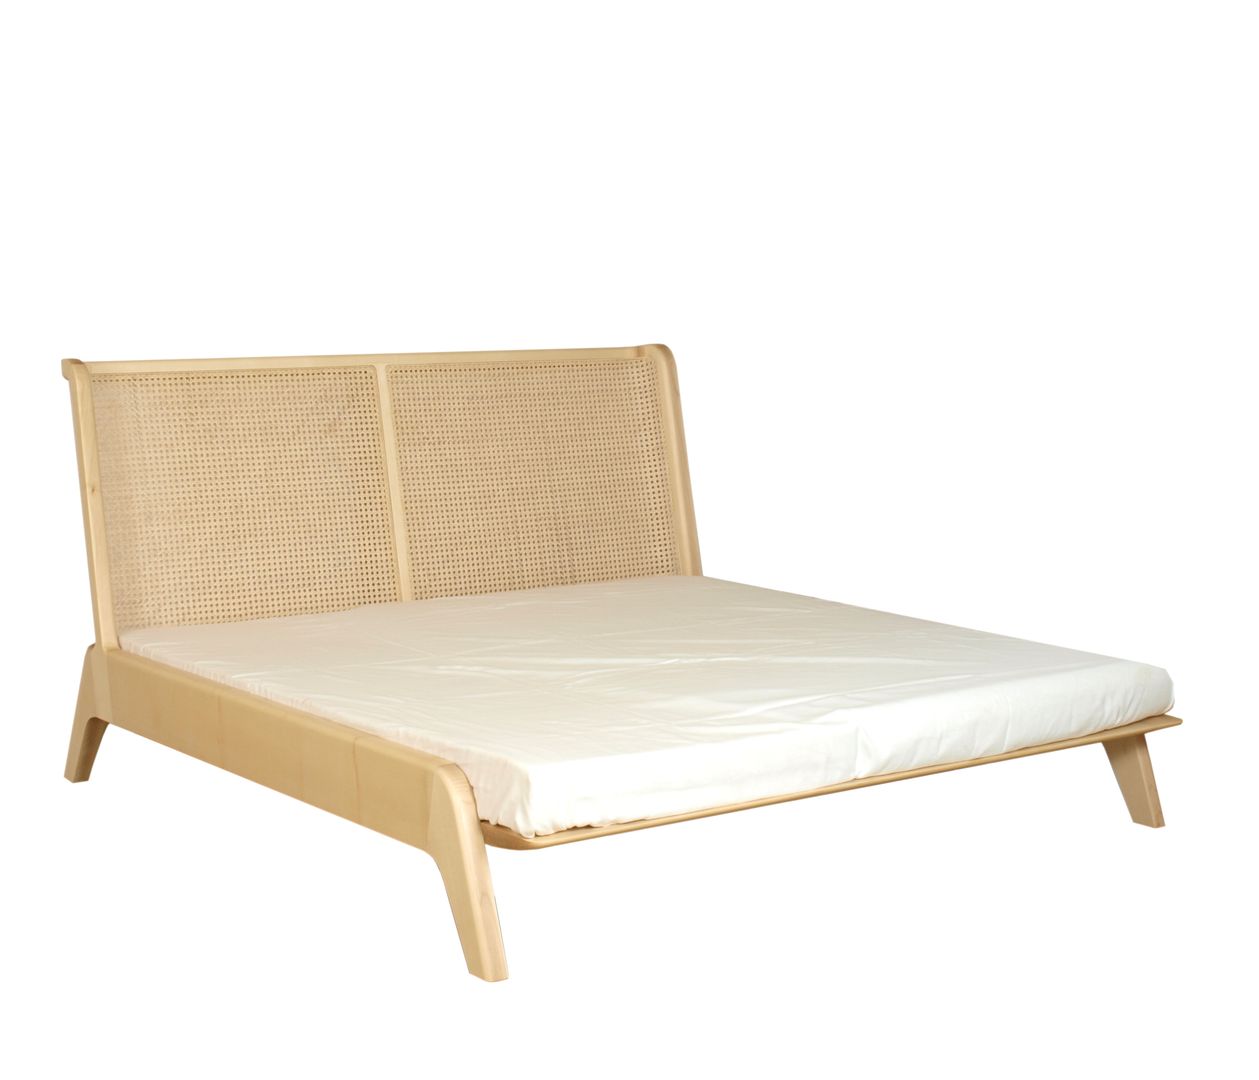 Stilvolle Massivholz-Möbel: Bett mit Kopfteil aus Rattan | homify